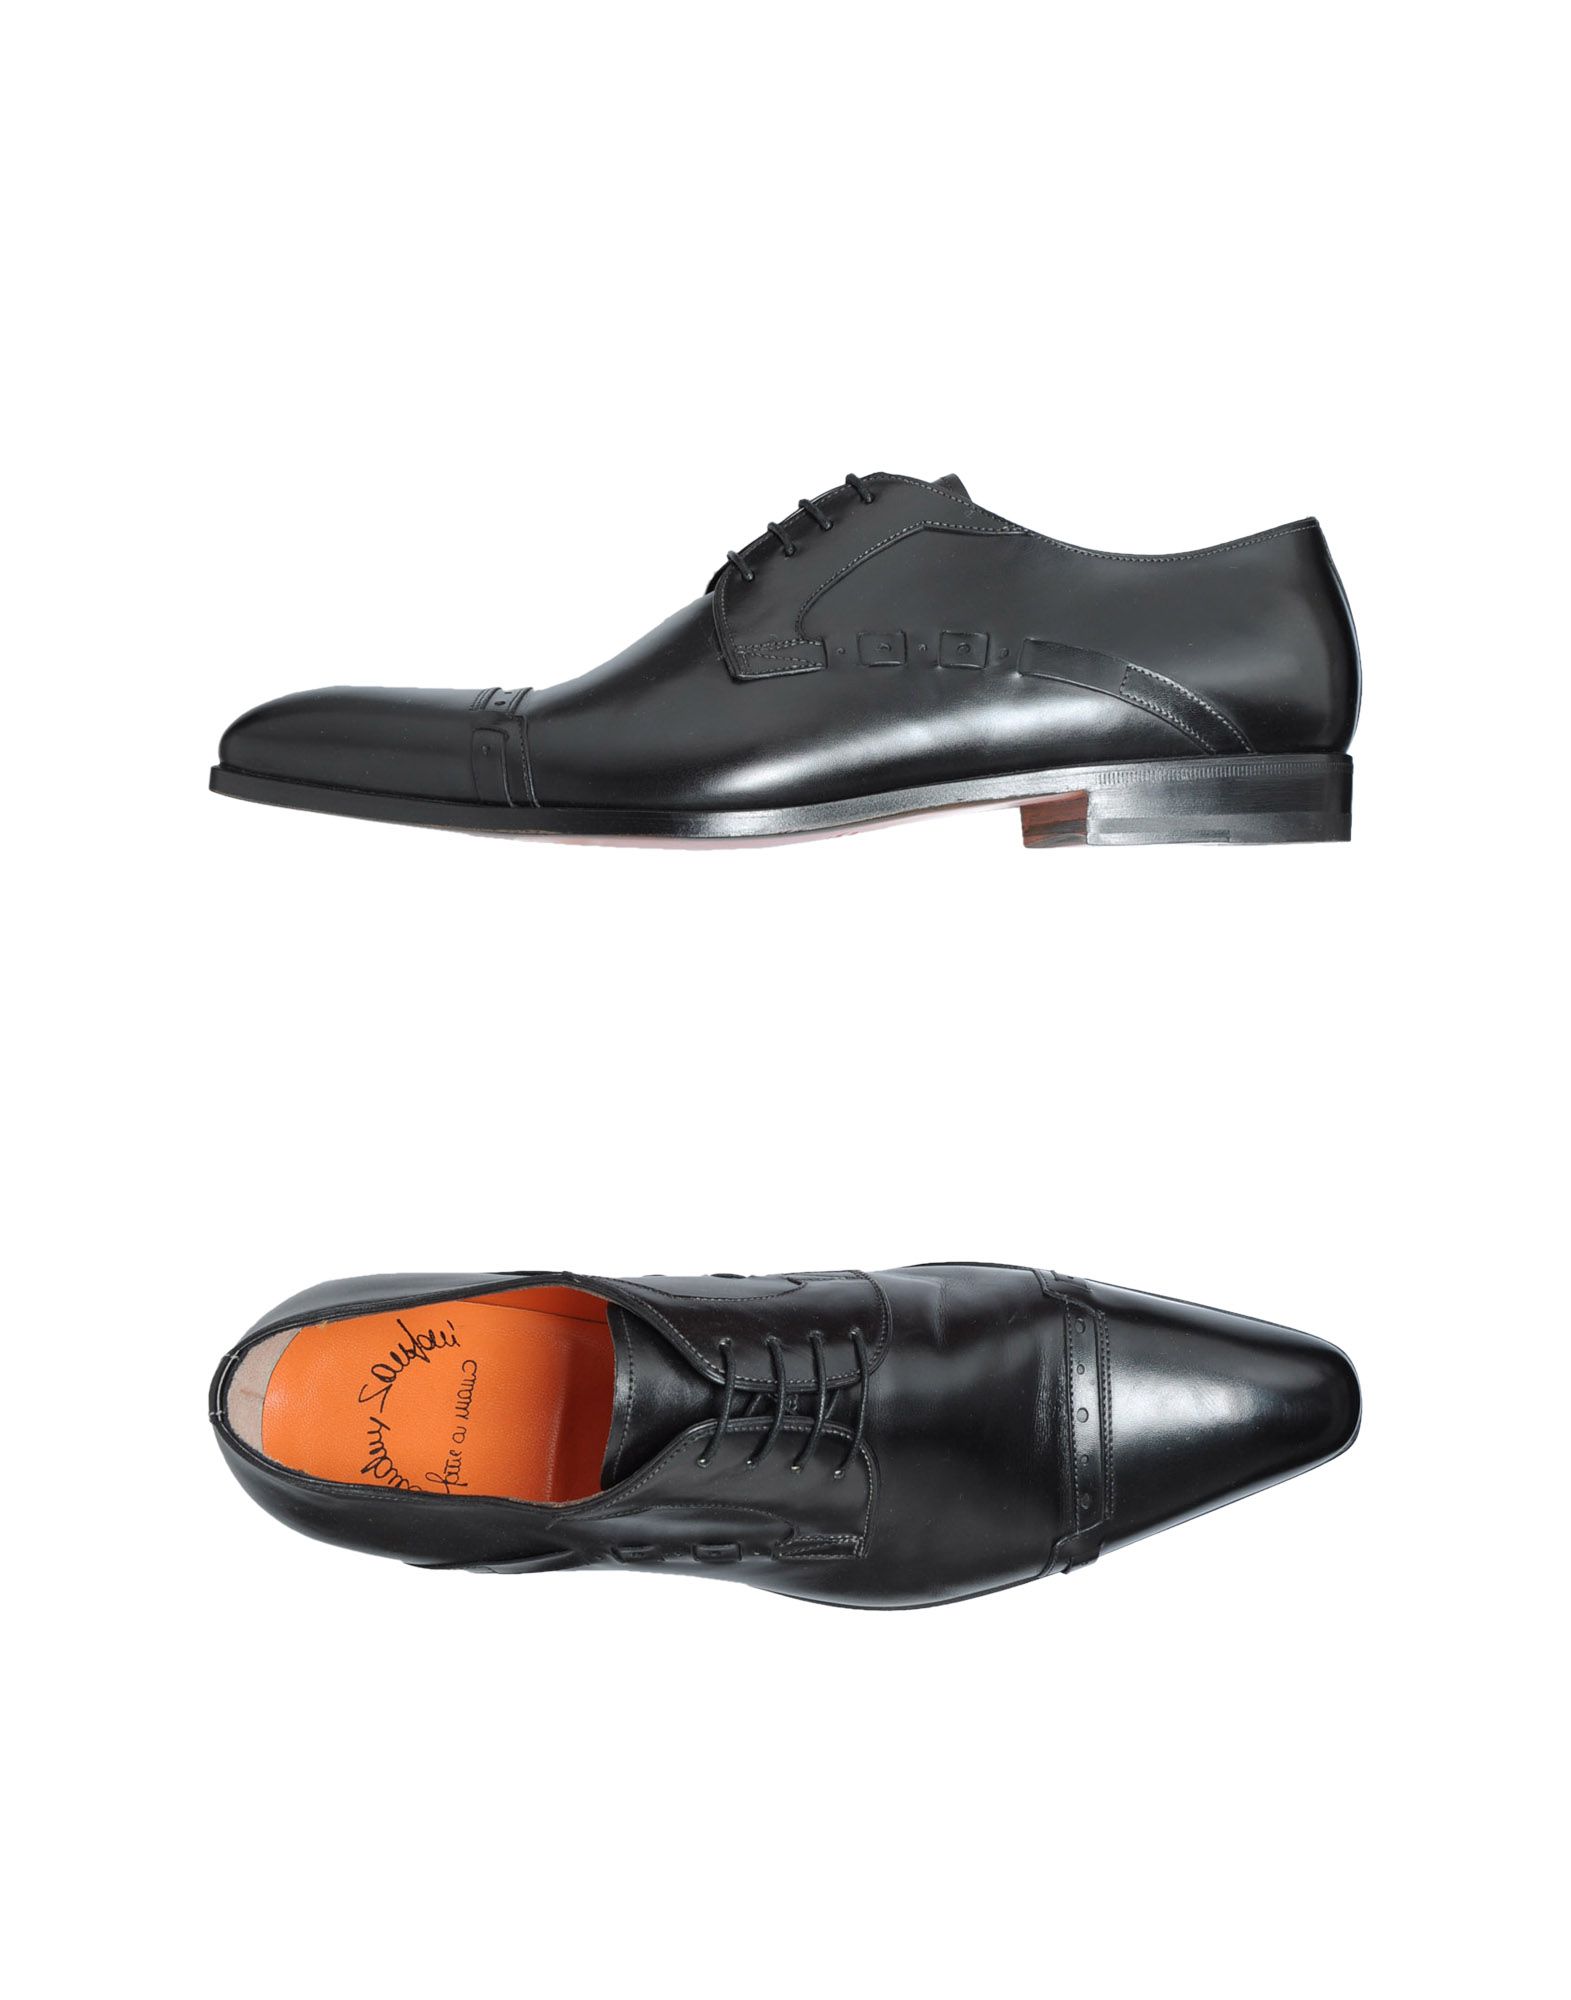 Foto Santoni Limited Edition Zapatos De Cordones Hombre Negro